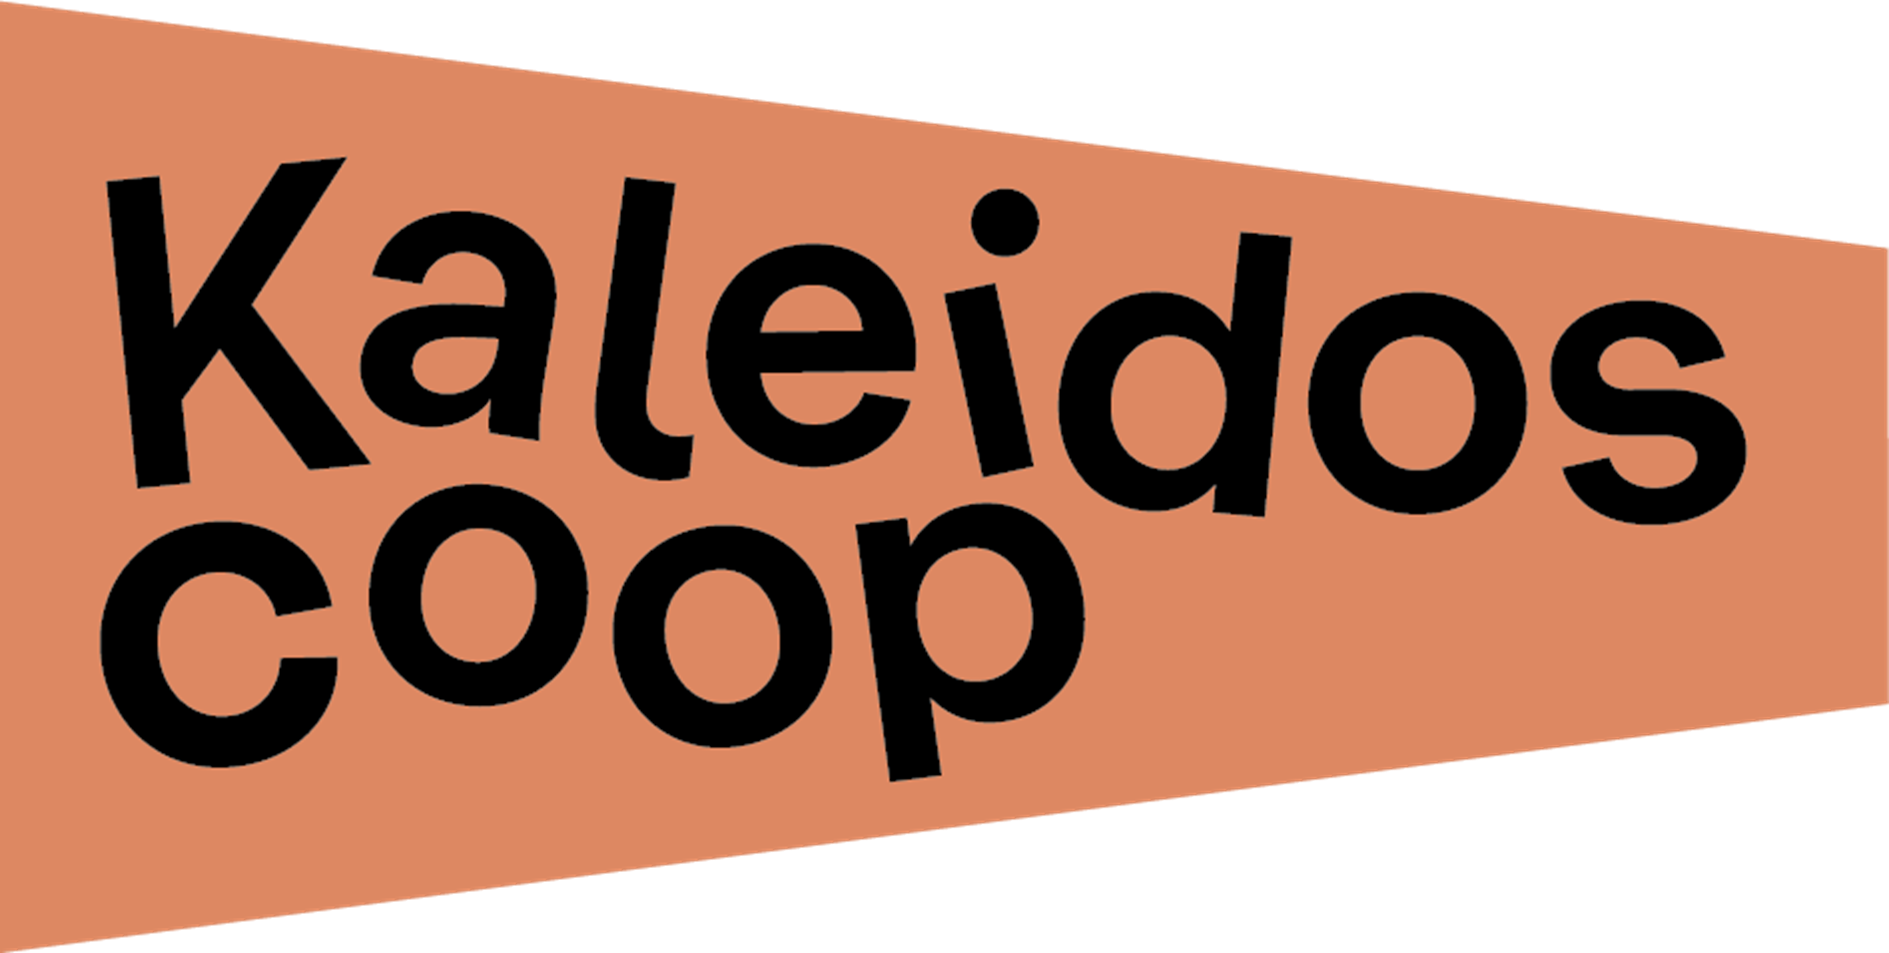 kaleidoscoop